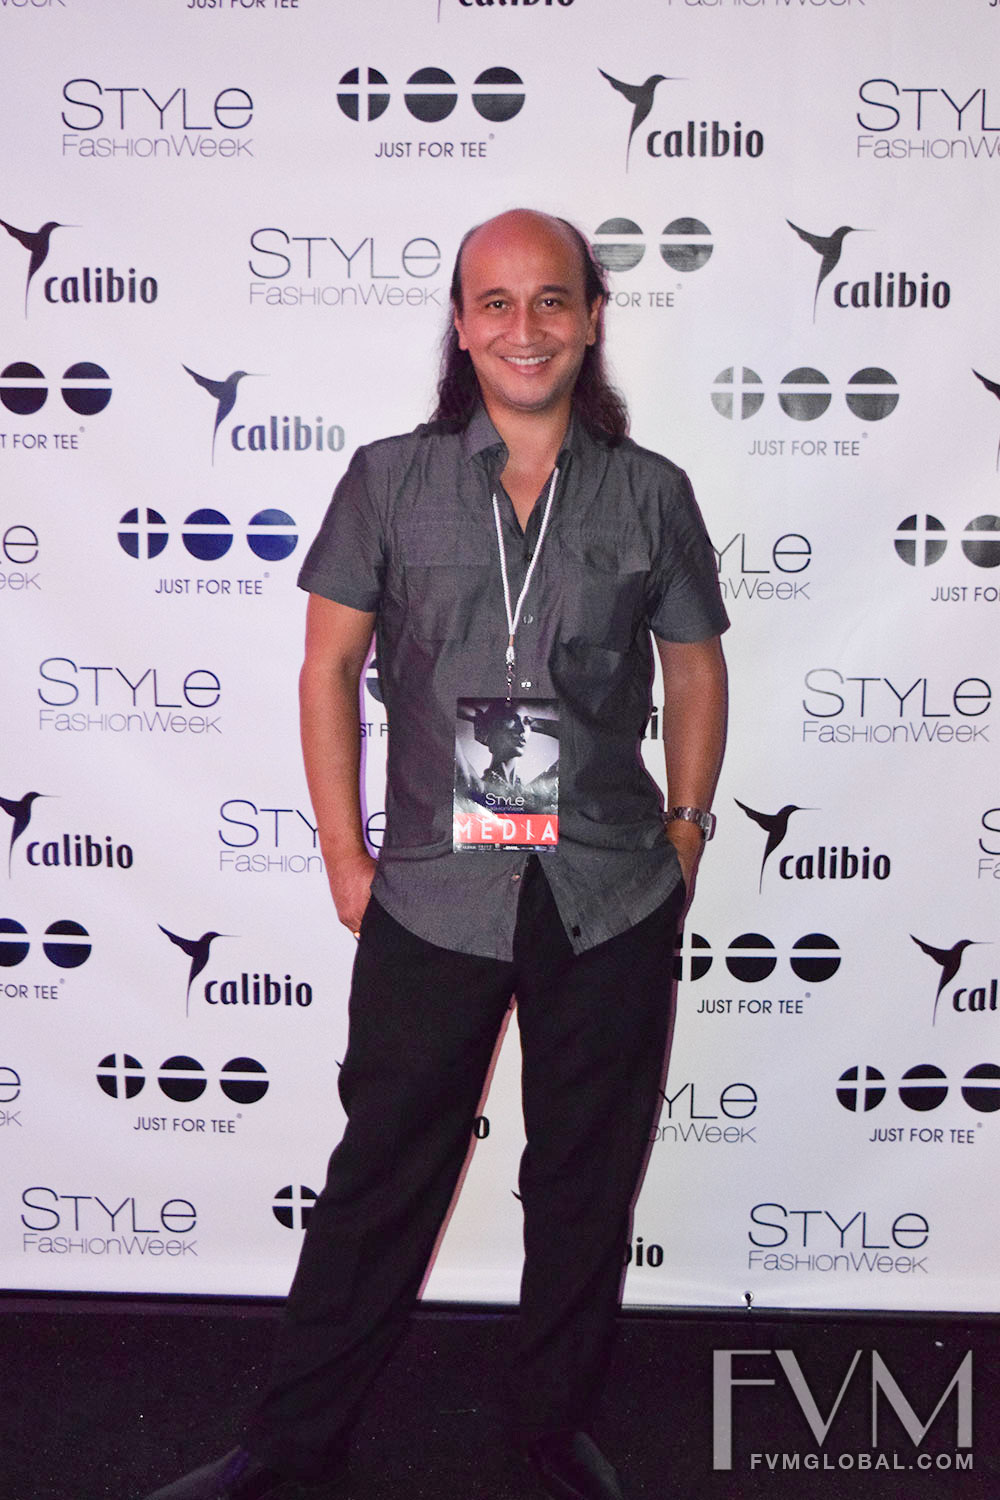 Style Fashion Week LA